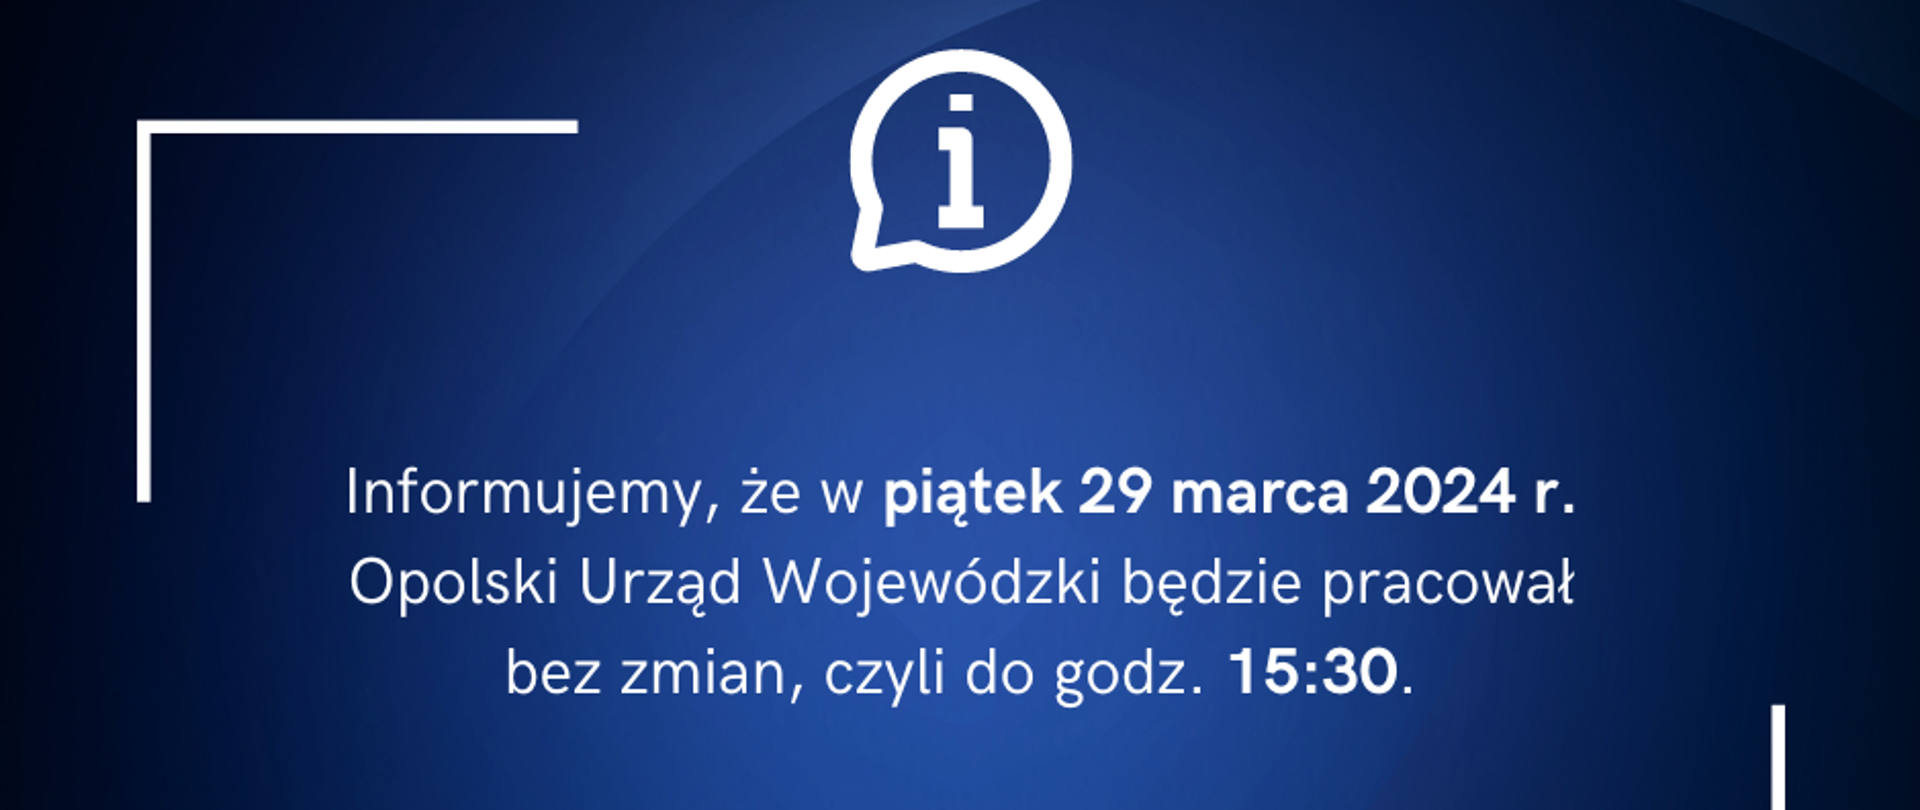 Grafika informująca, że w piątek, 29 marca 2024 roku, Opolski Urząd Wojewódzki będzie czynny bez zmian, do godziny 15:30. 